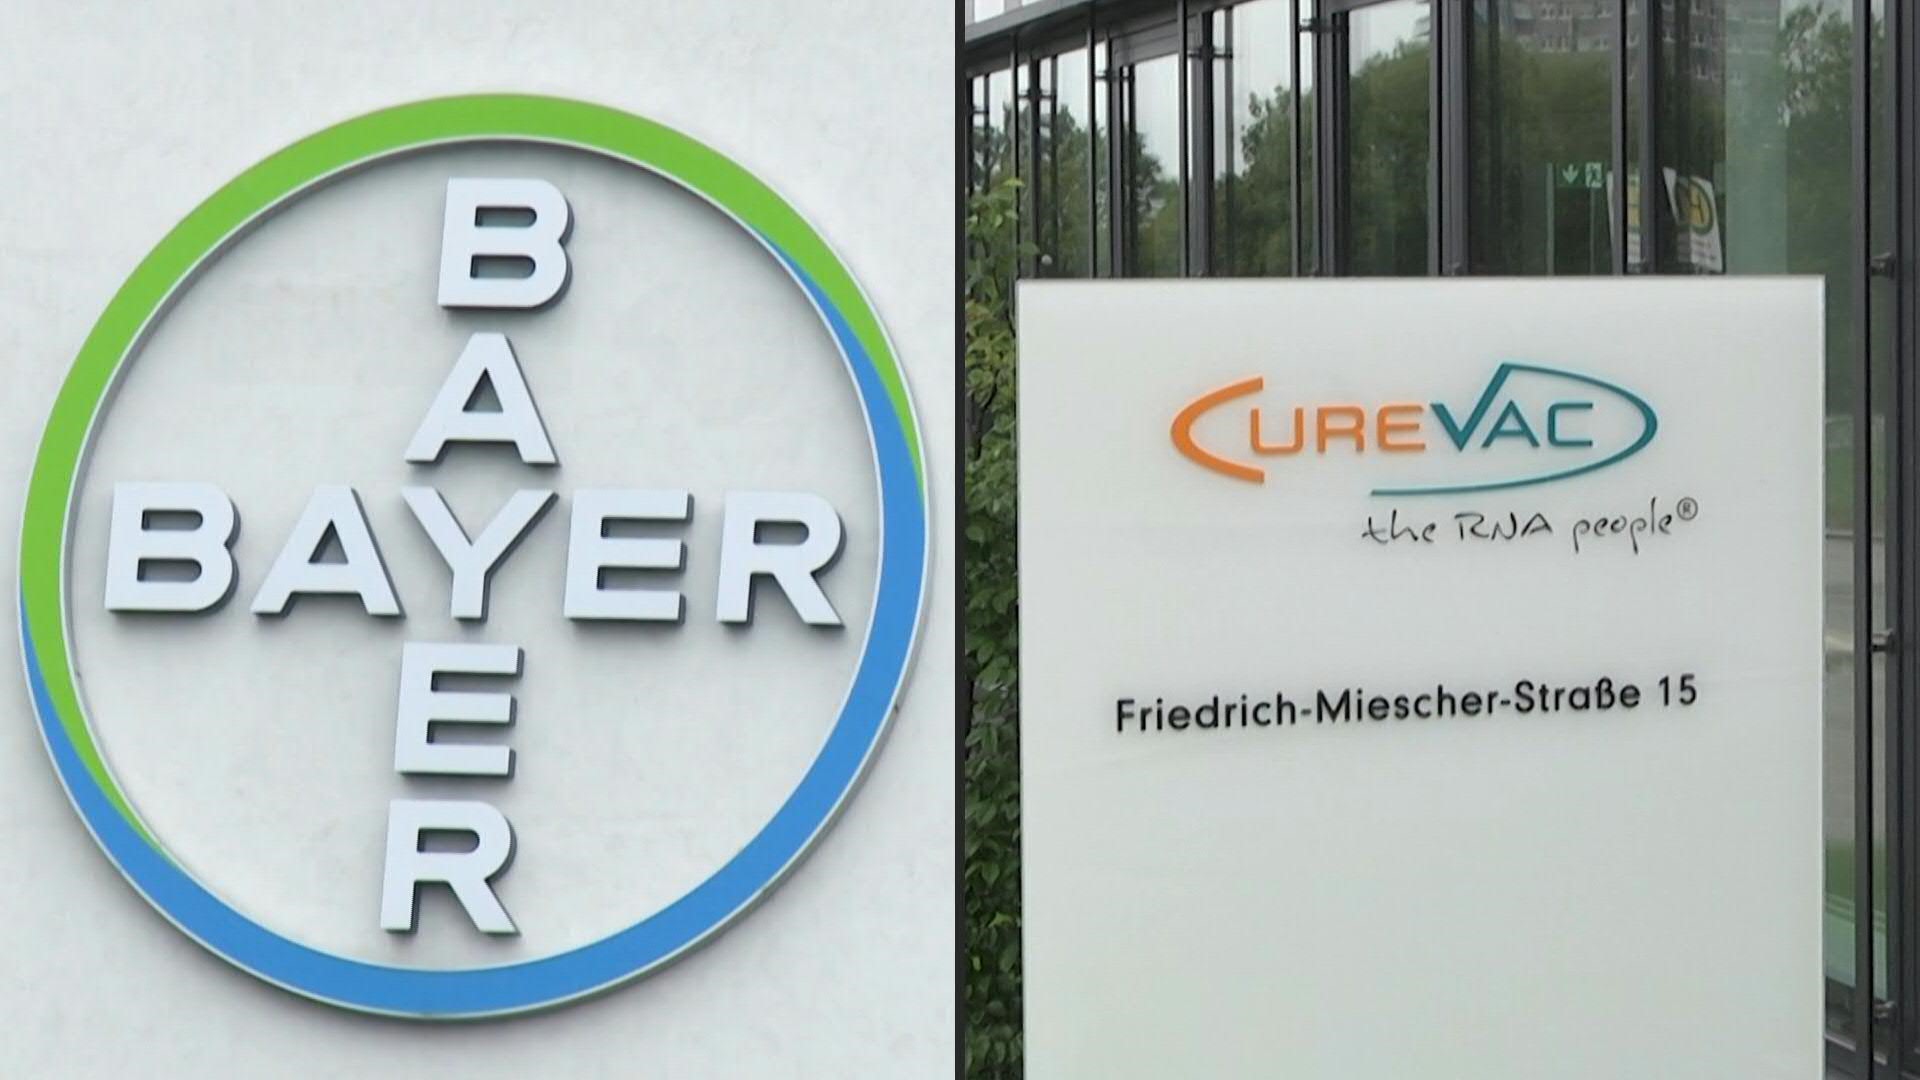 El gigante farmacéutico Bayer producirá la vacuna de la alemana CureVac